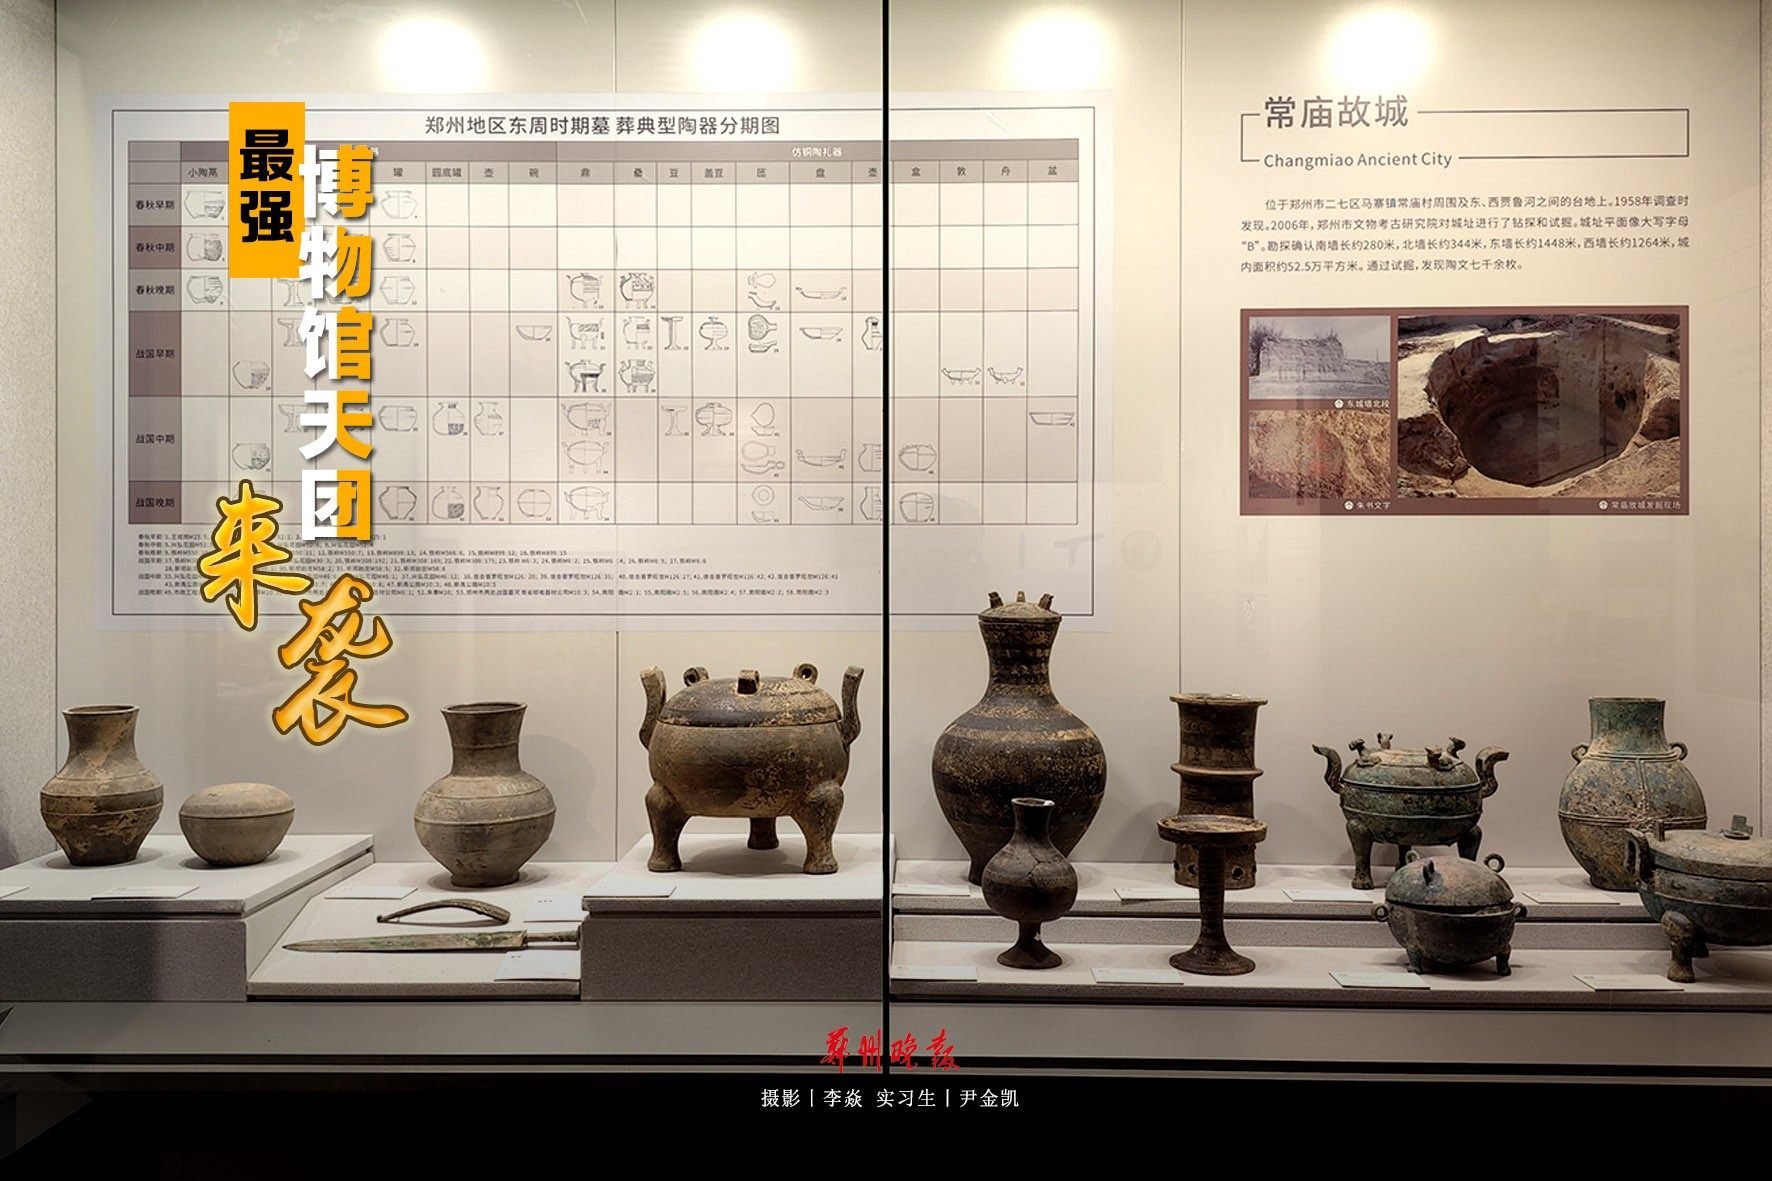 999-5郑州市文物考古研究院考古博物馆.jpg